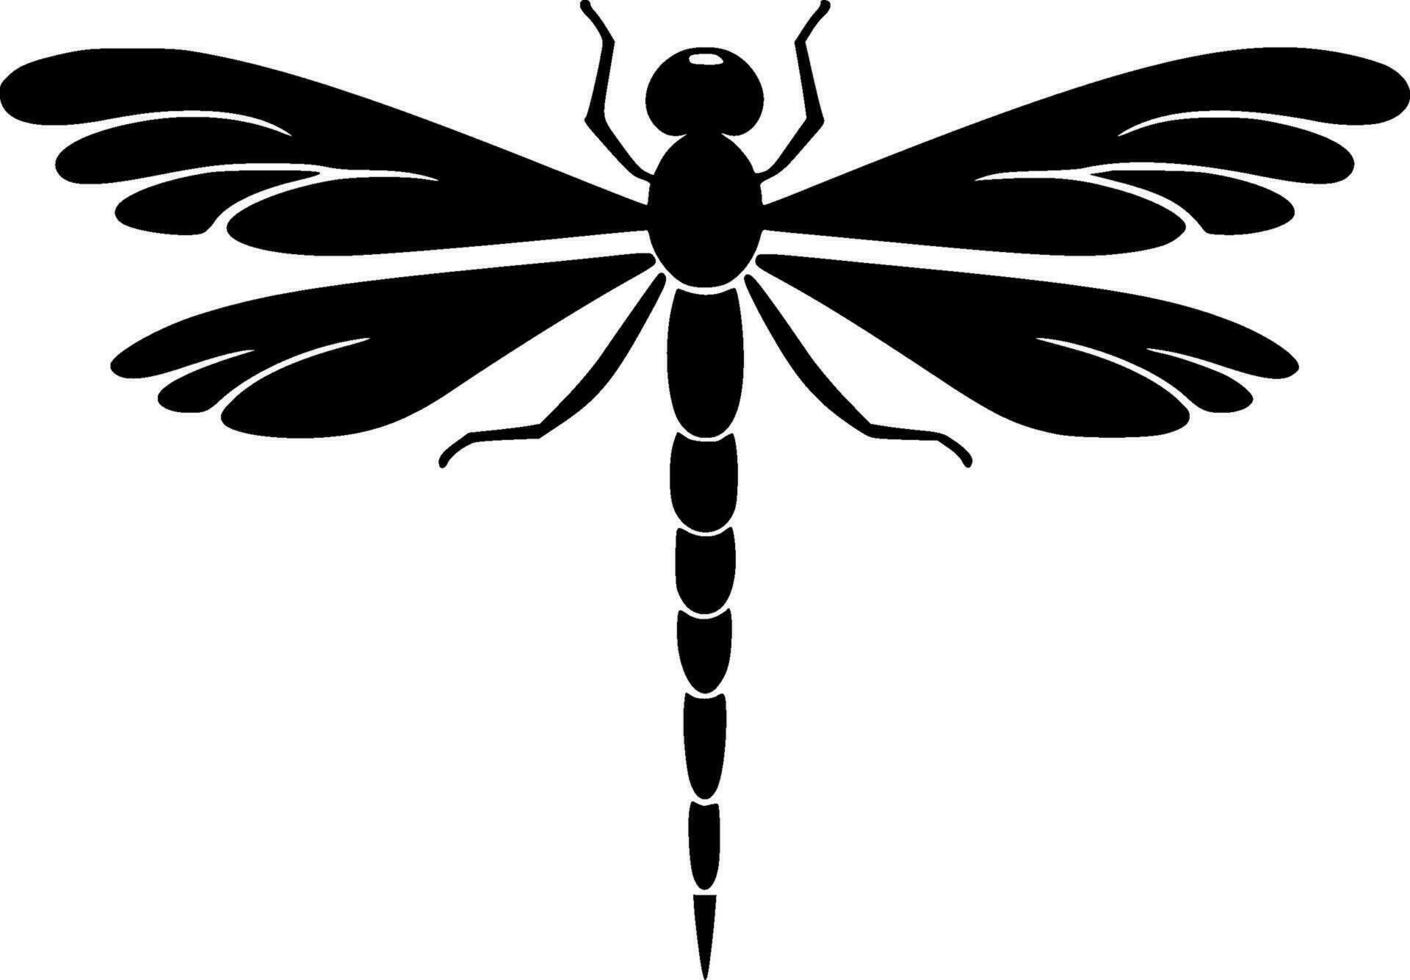 trollslända - svart och vit isolerat ikon - vektor illustration